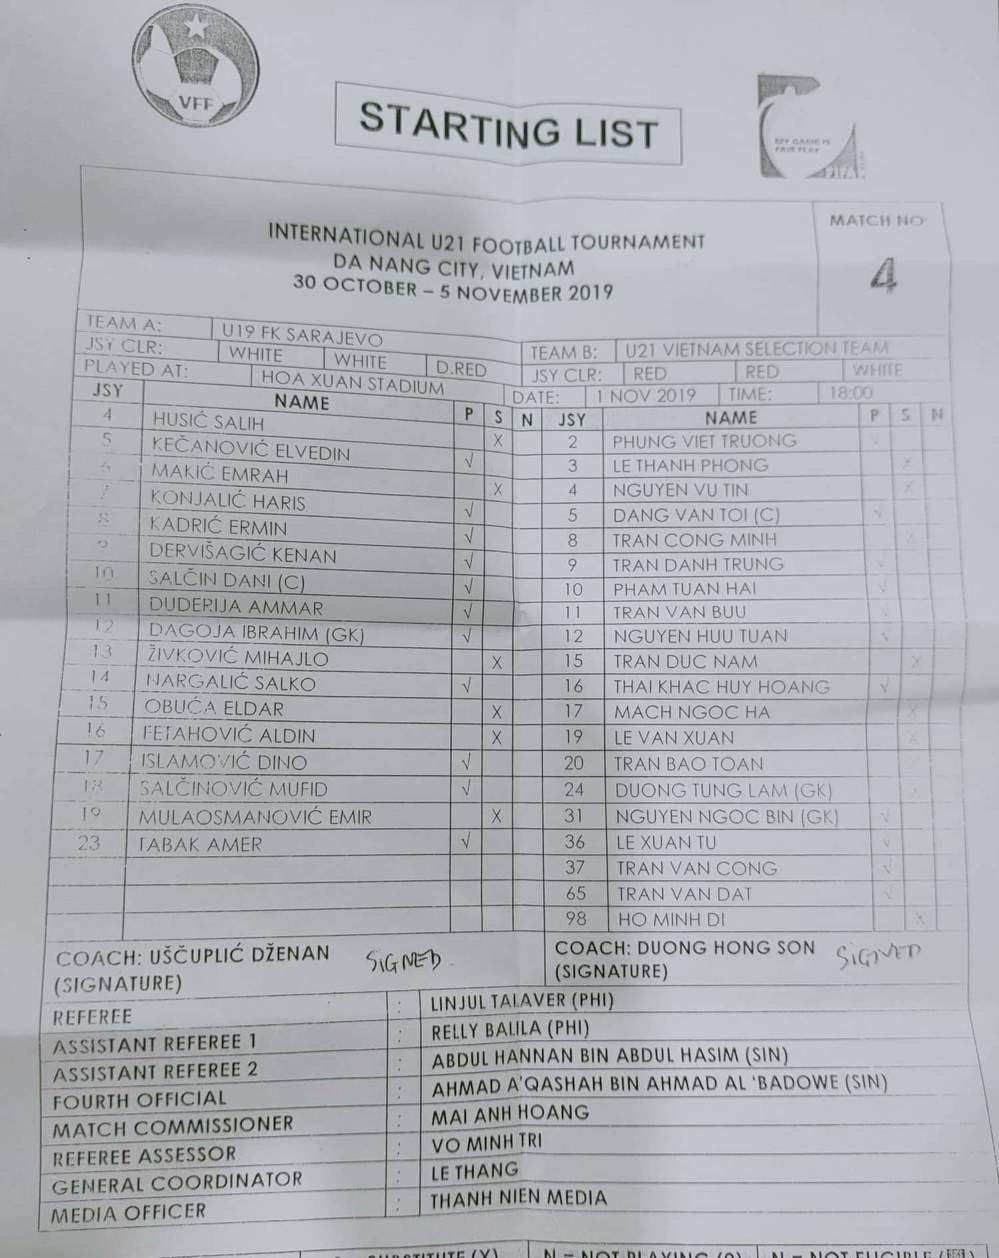  
Danh sách đăng kí thi đấu của U21 Việt Namvà U19 Sarajevo